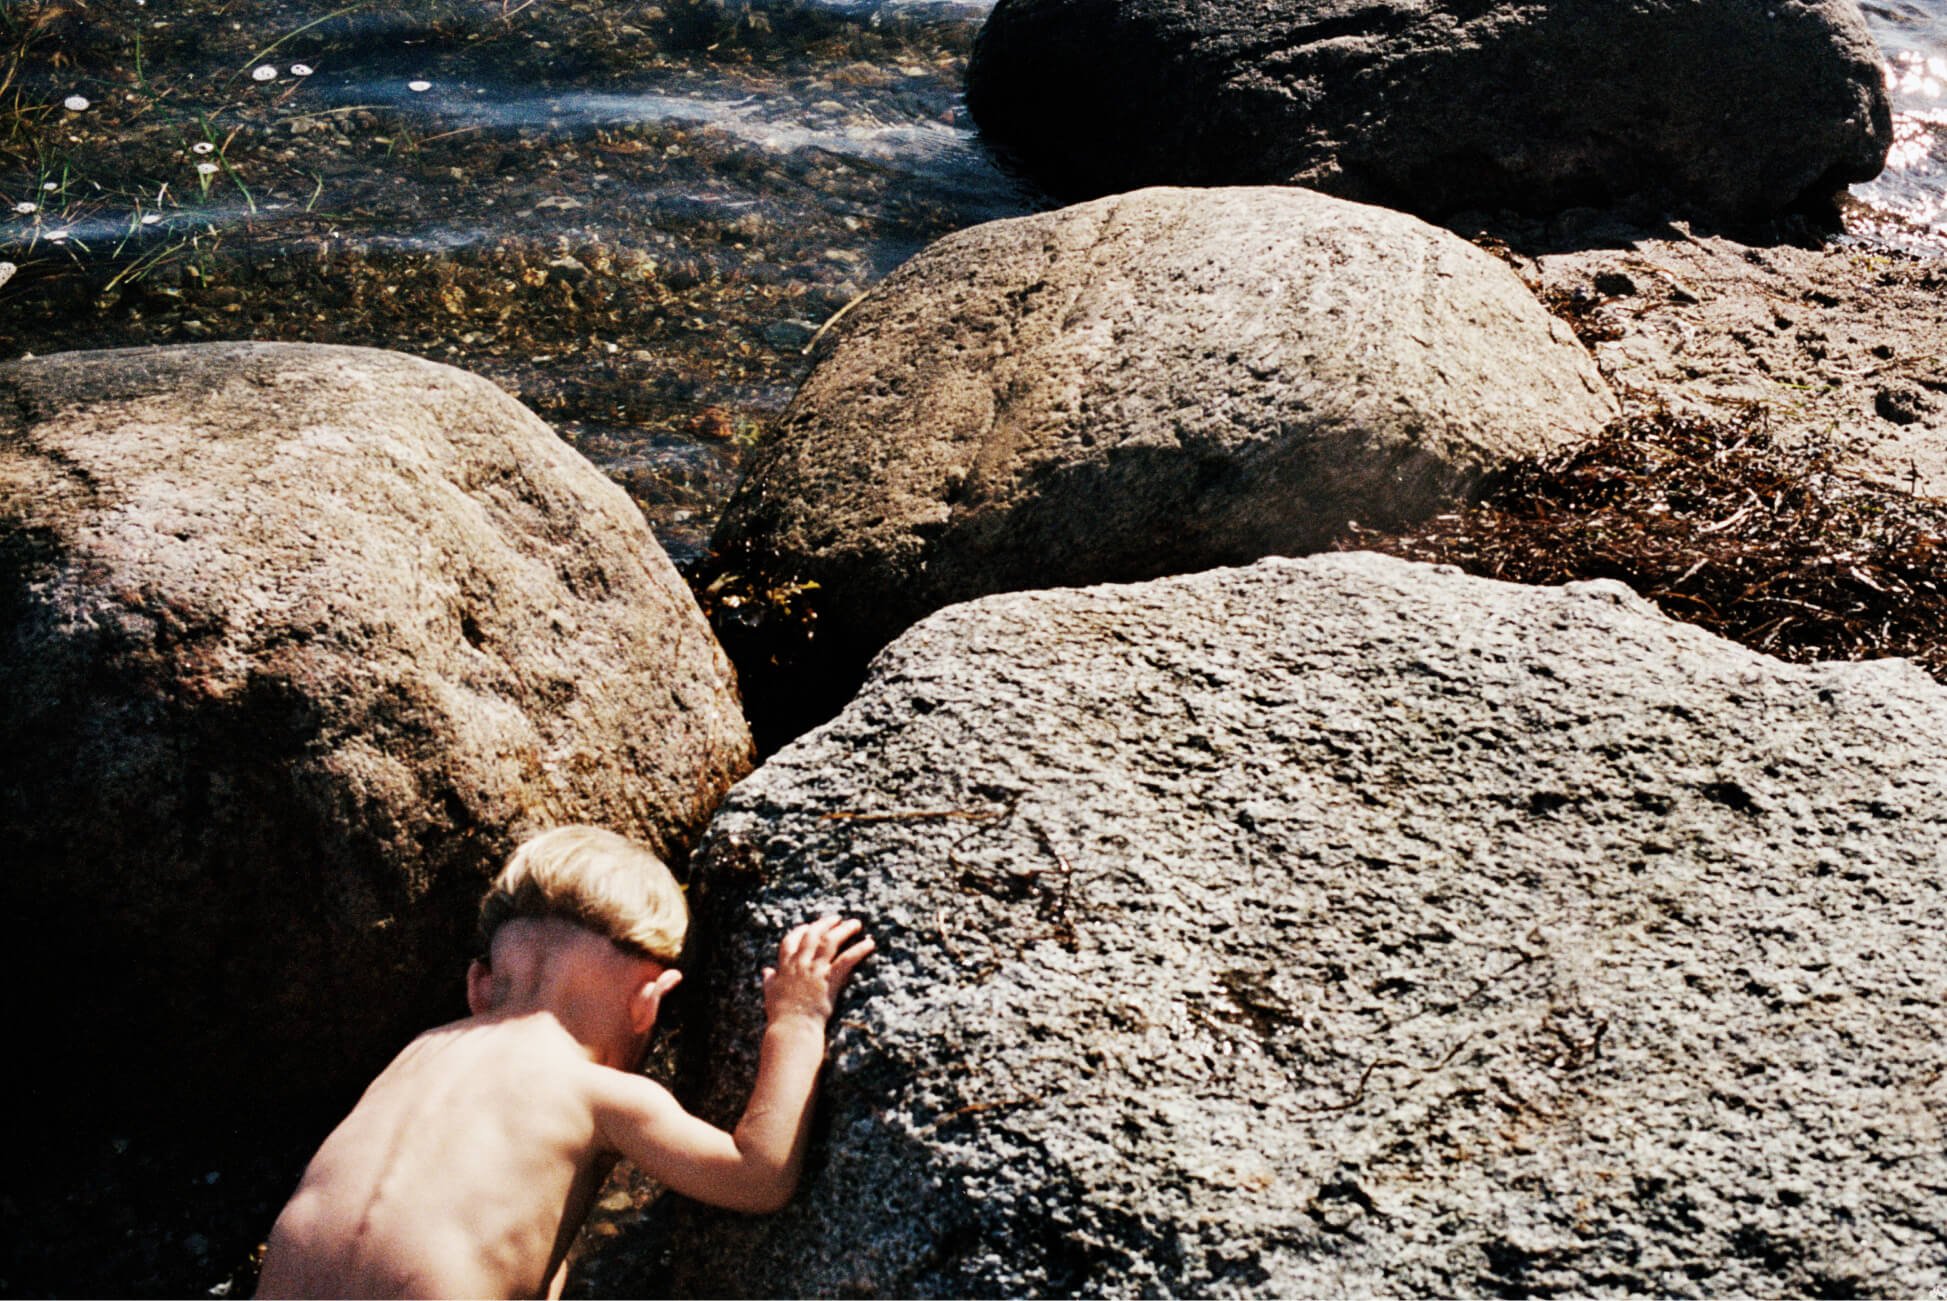 Uma criancinha brinca nas pedras na água.